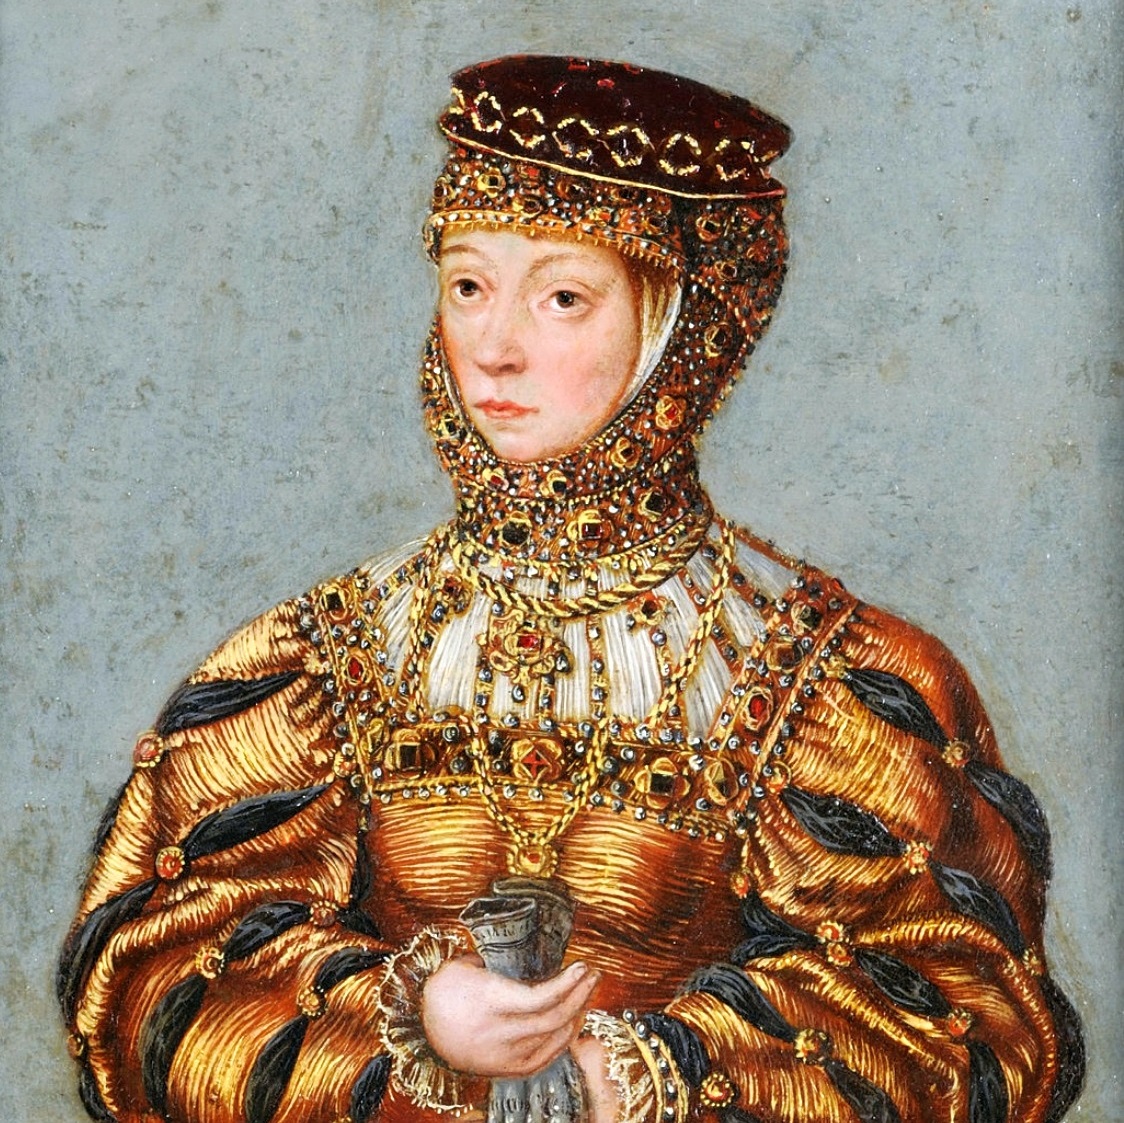 Barbara Radziwiłłówna nosiła polską koronę od grudnia 1550 roku do maja 1551 roku.